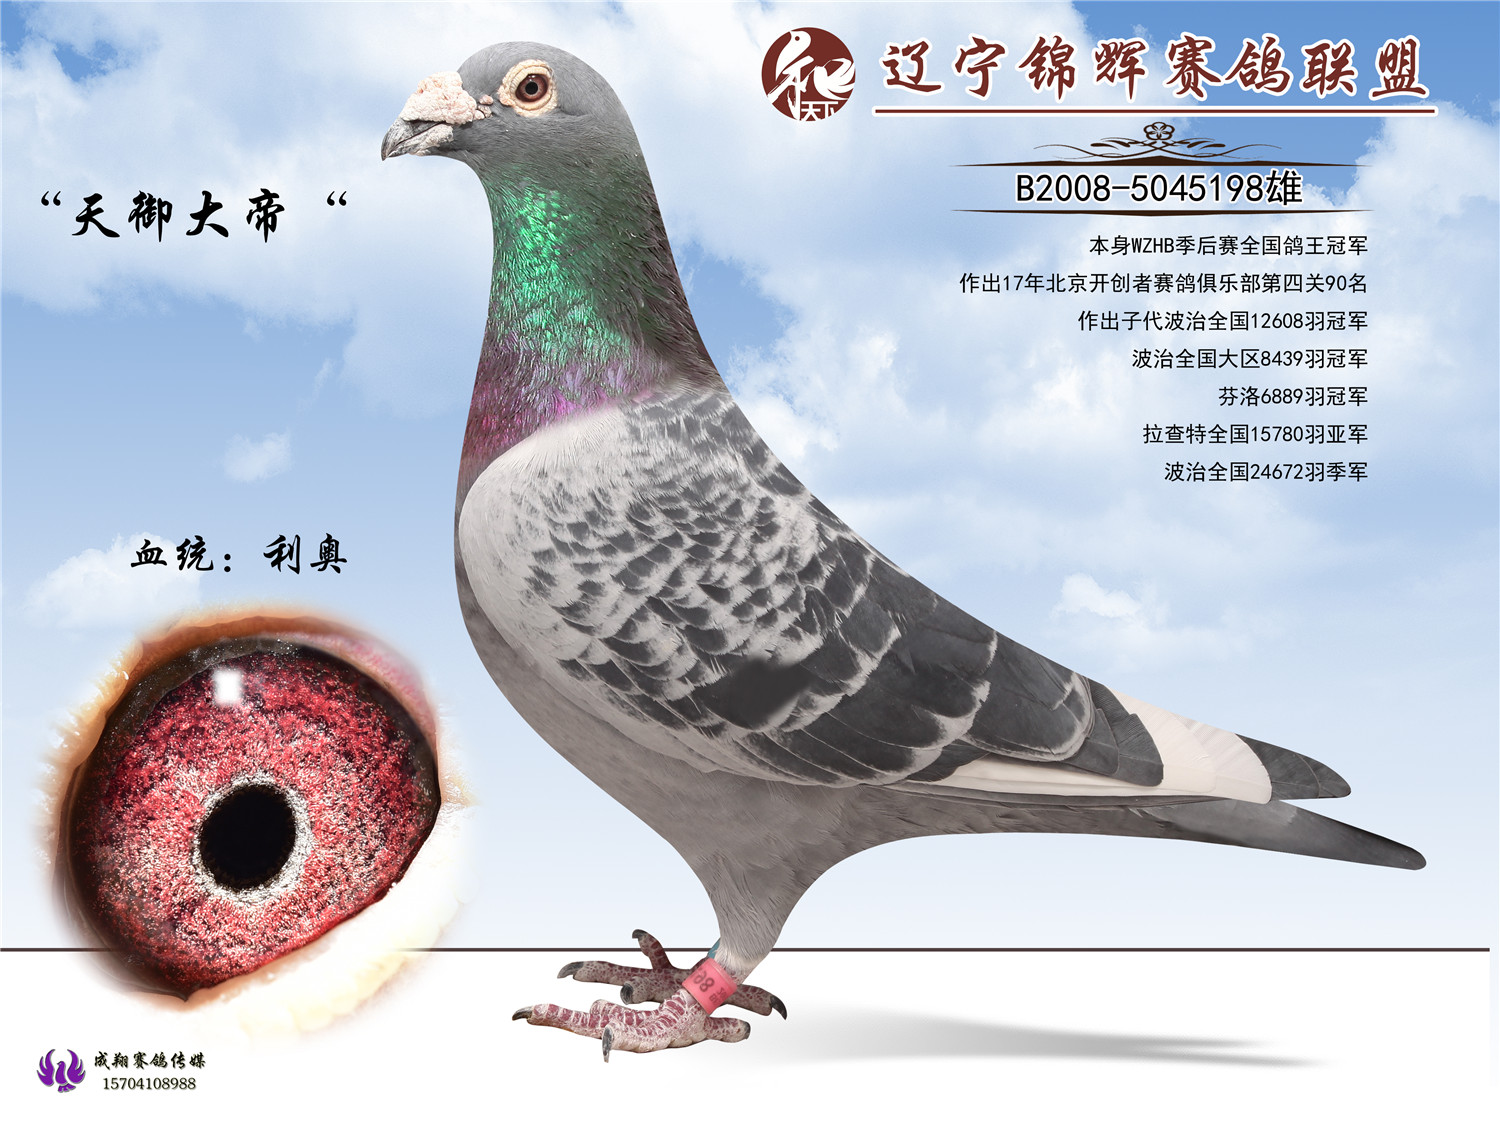 谁有观赏鸽,我想买,最好在汉中这边-天下鸽问-ask.chinaxinge.com